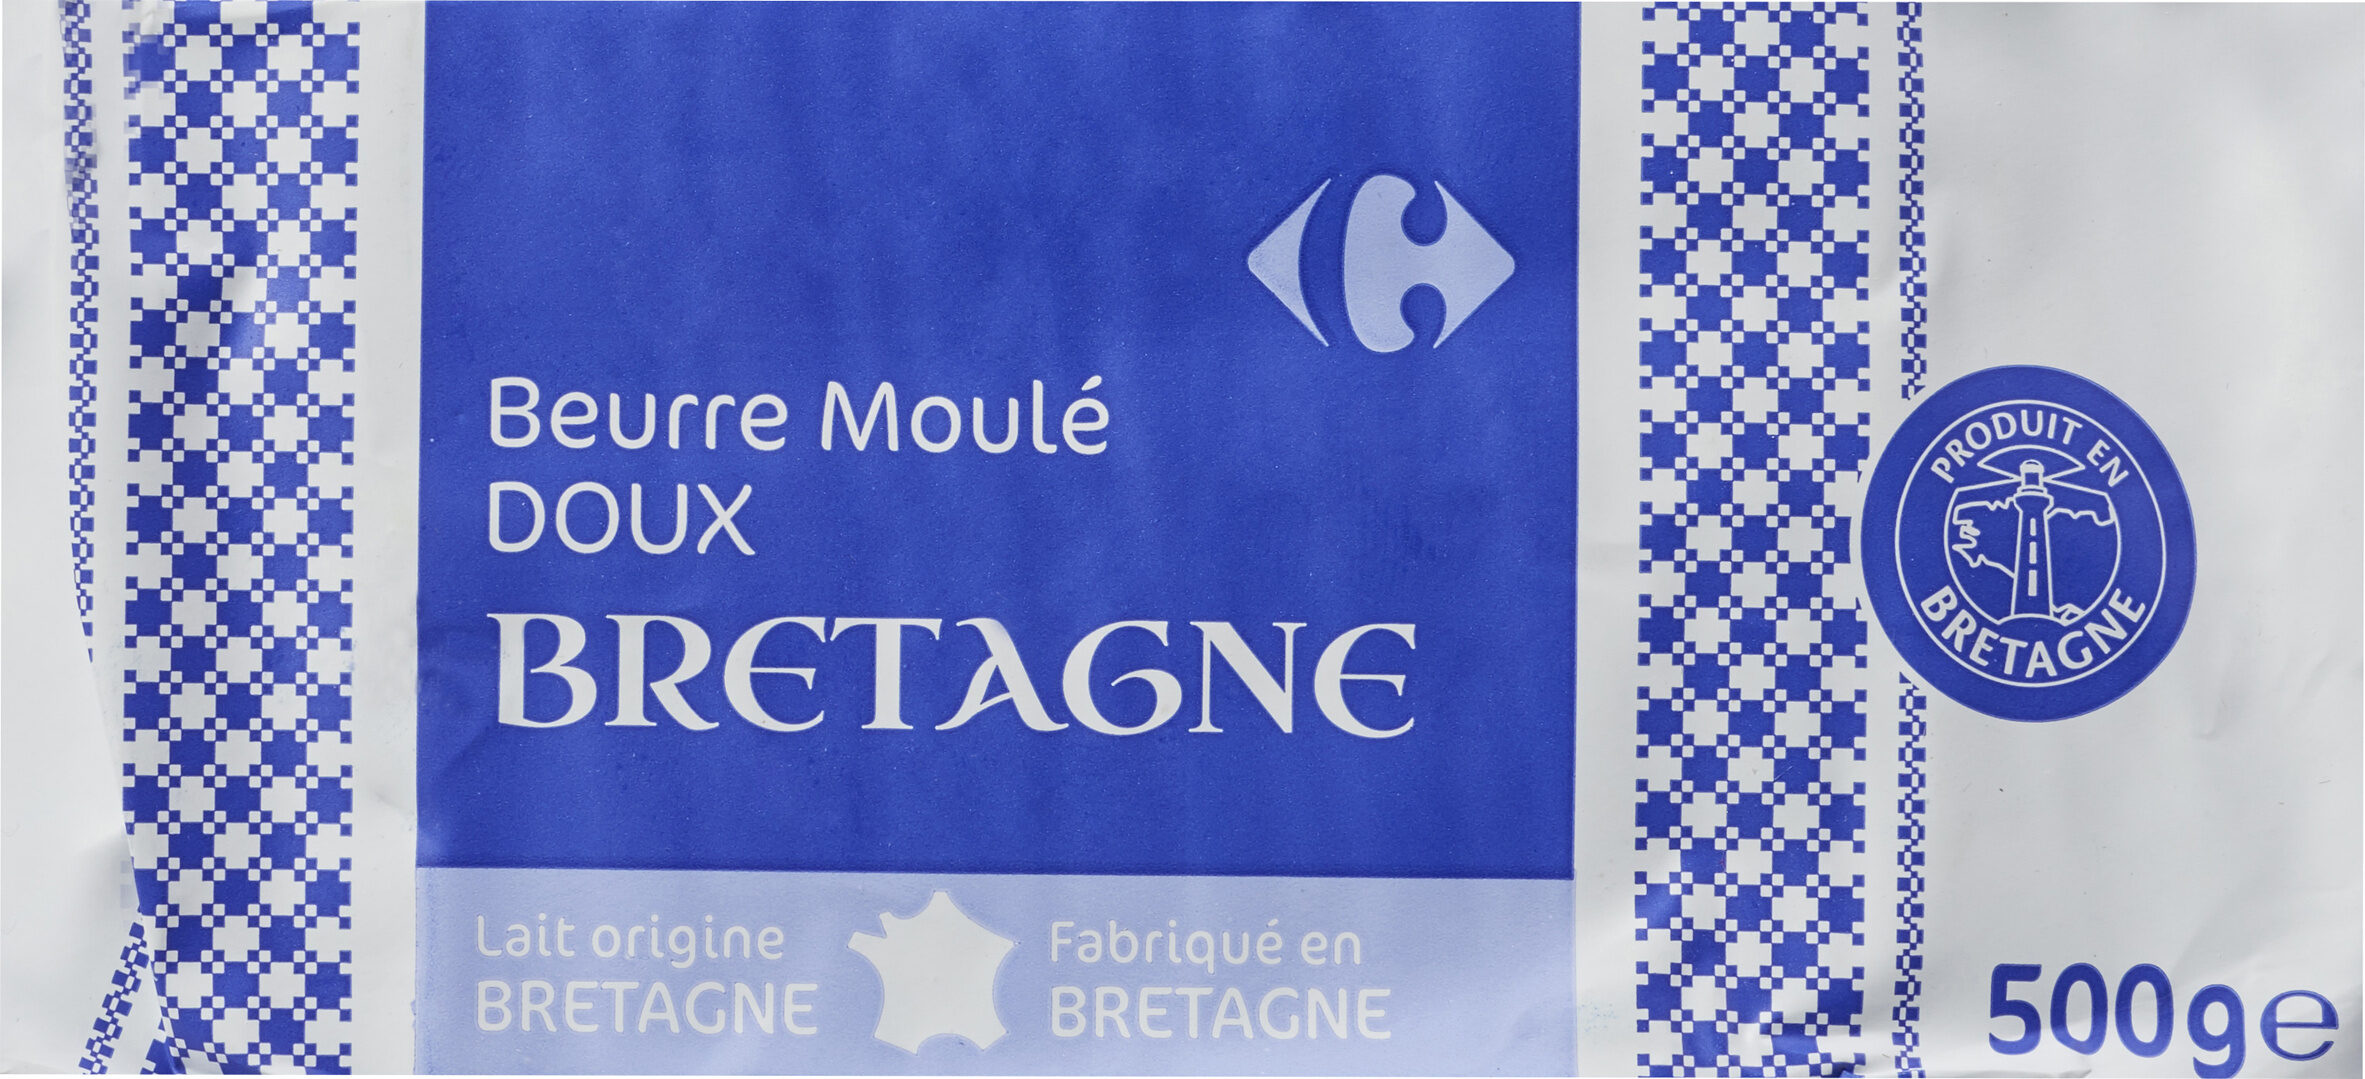 BEURRE MOULÉ DE Bretagne Doux - Product - fr